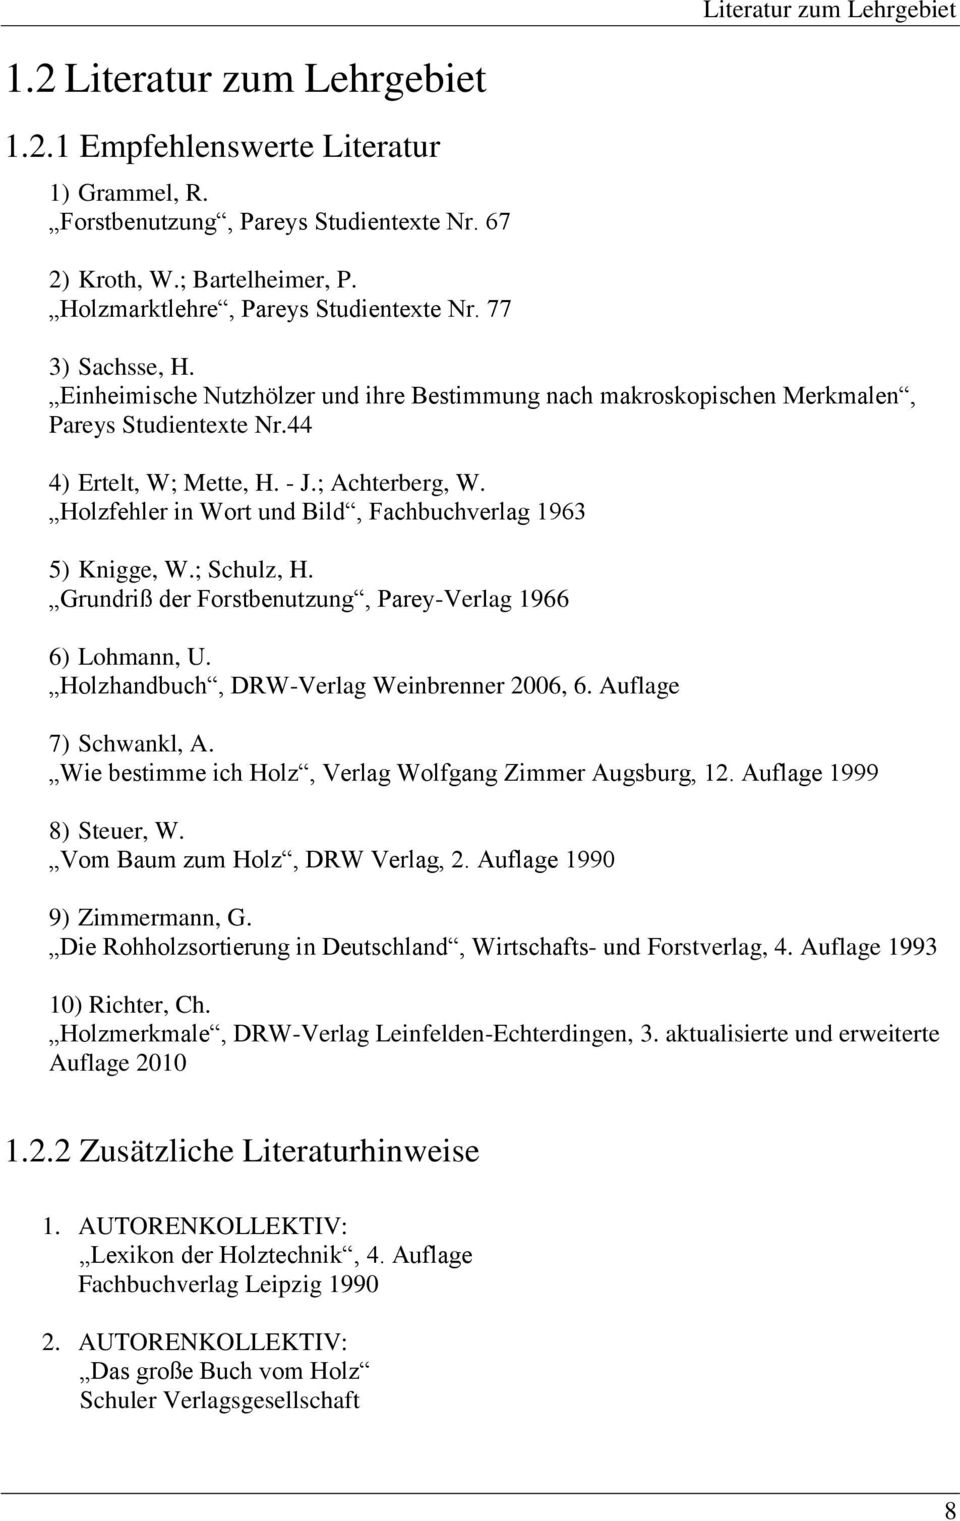 ; Achterberg, W. Holzfehler in Wort und Bild, Fachbuchverlag 1963 5) Knigge, W.; Schulz, H. Grundriß der Forstbenutzung, Parey-Verlag 1966 6) Lohmann, U. Holzhandbuch, DRW-Verlag Weinbrenner 2006, 6.